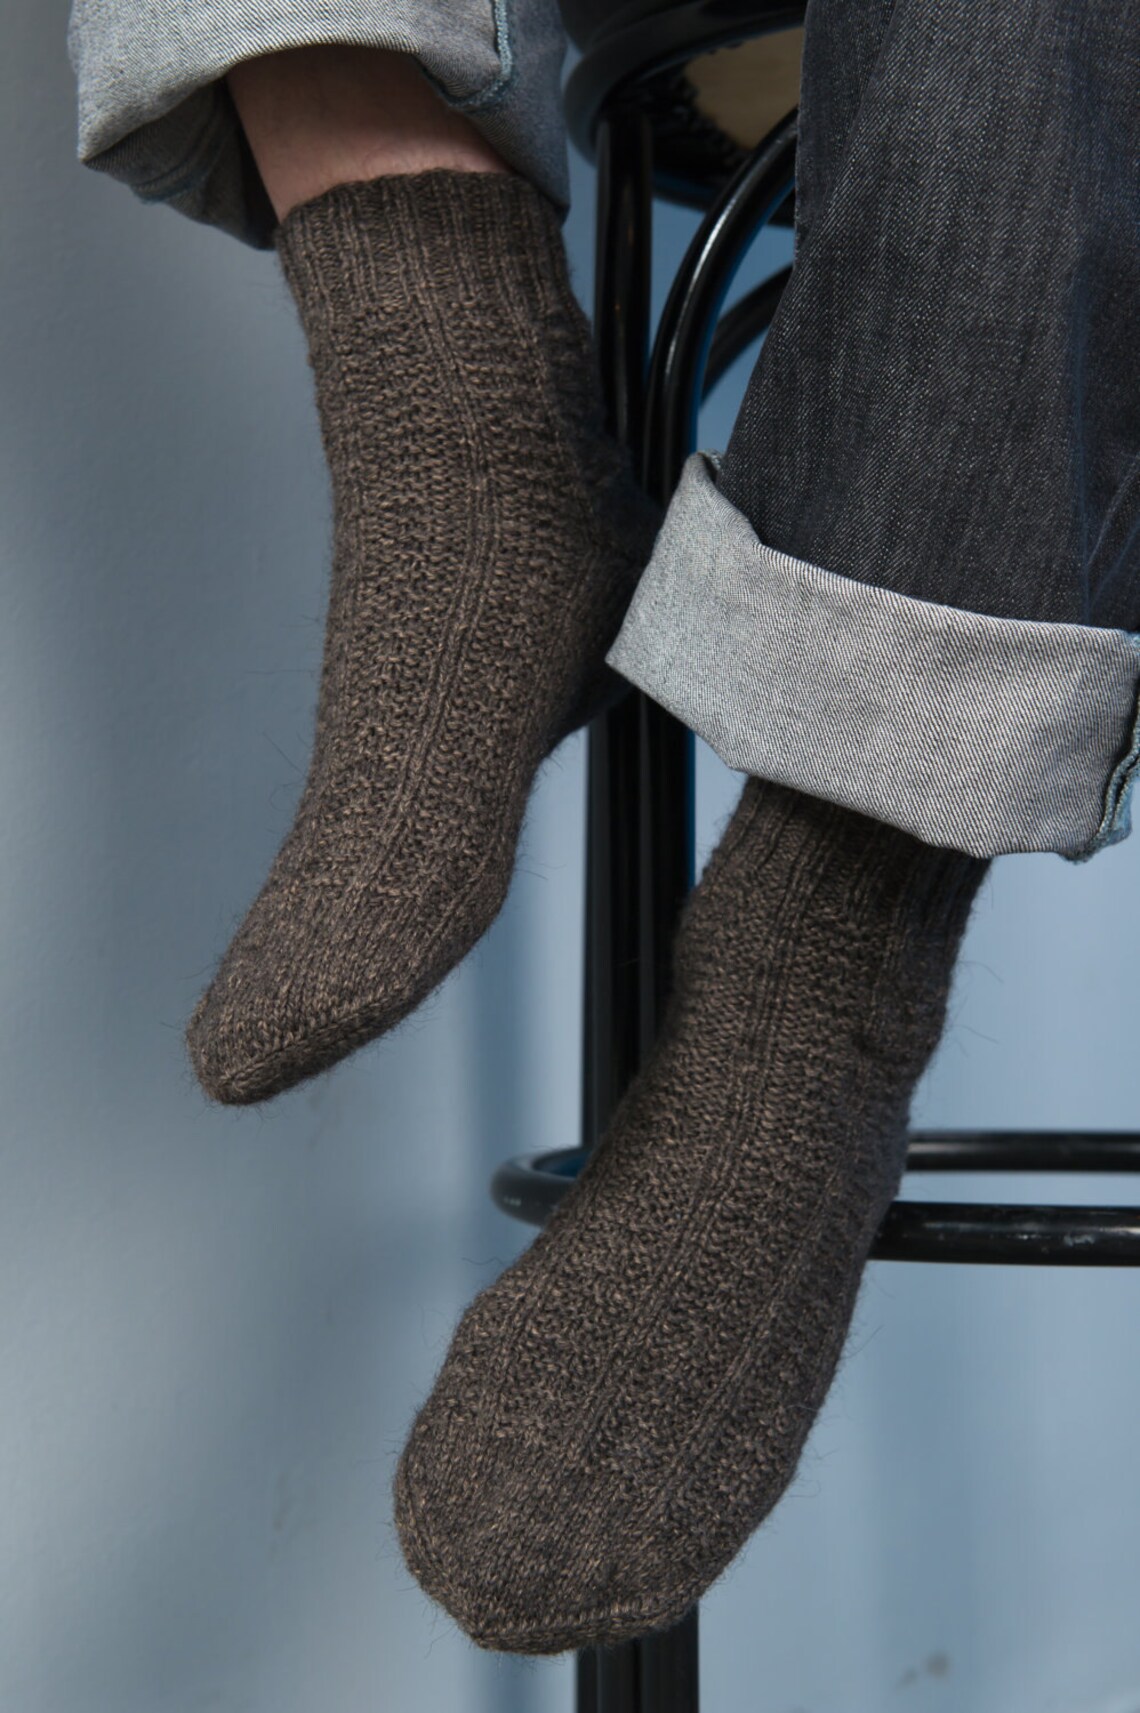 Hand knitted wool men's socks winter men's socks | Etsy